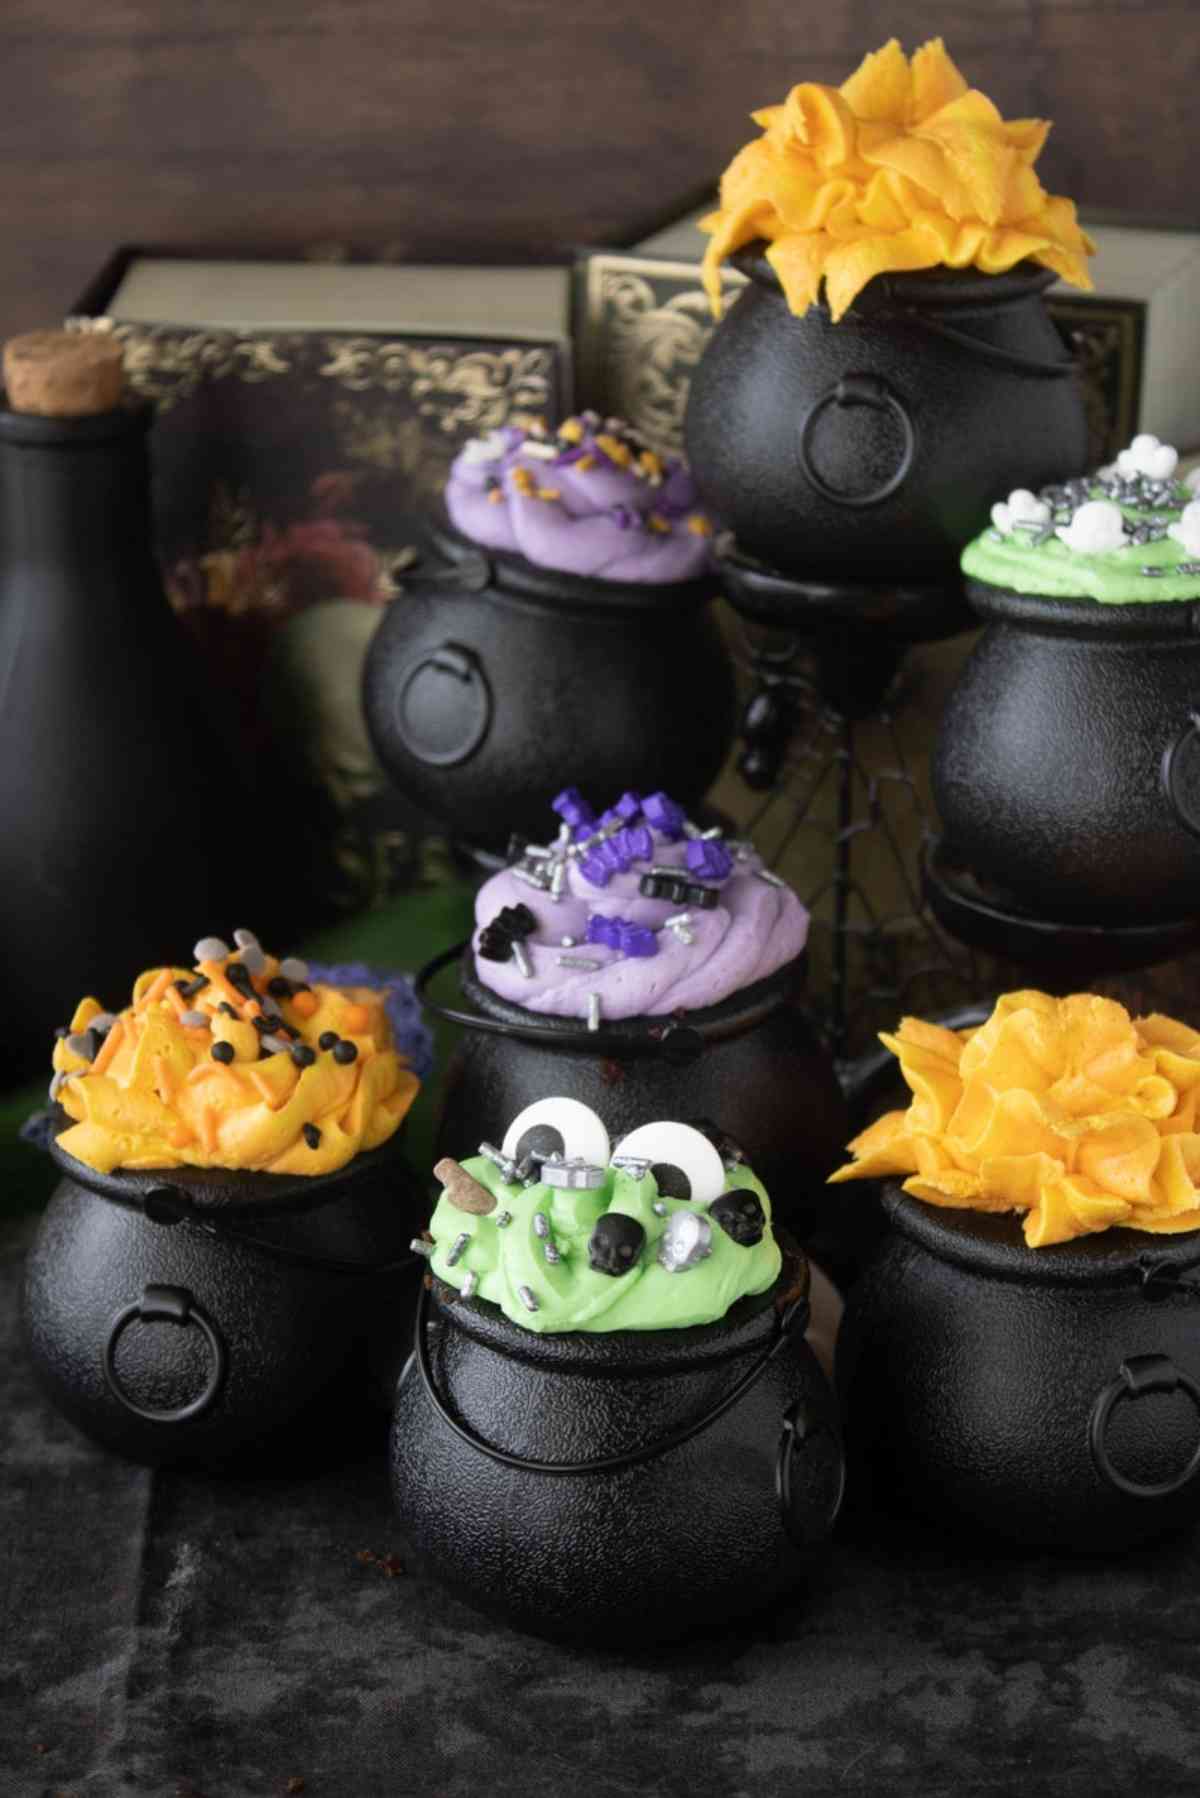 7 mini cauldron cakes which are green, orange and purple in color.